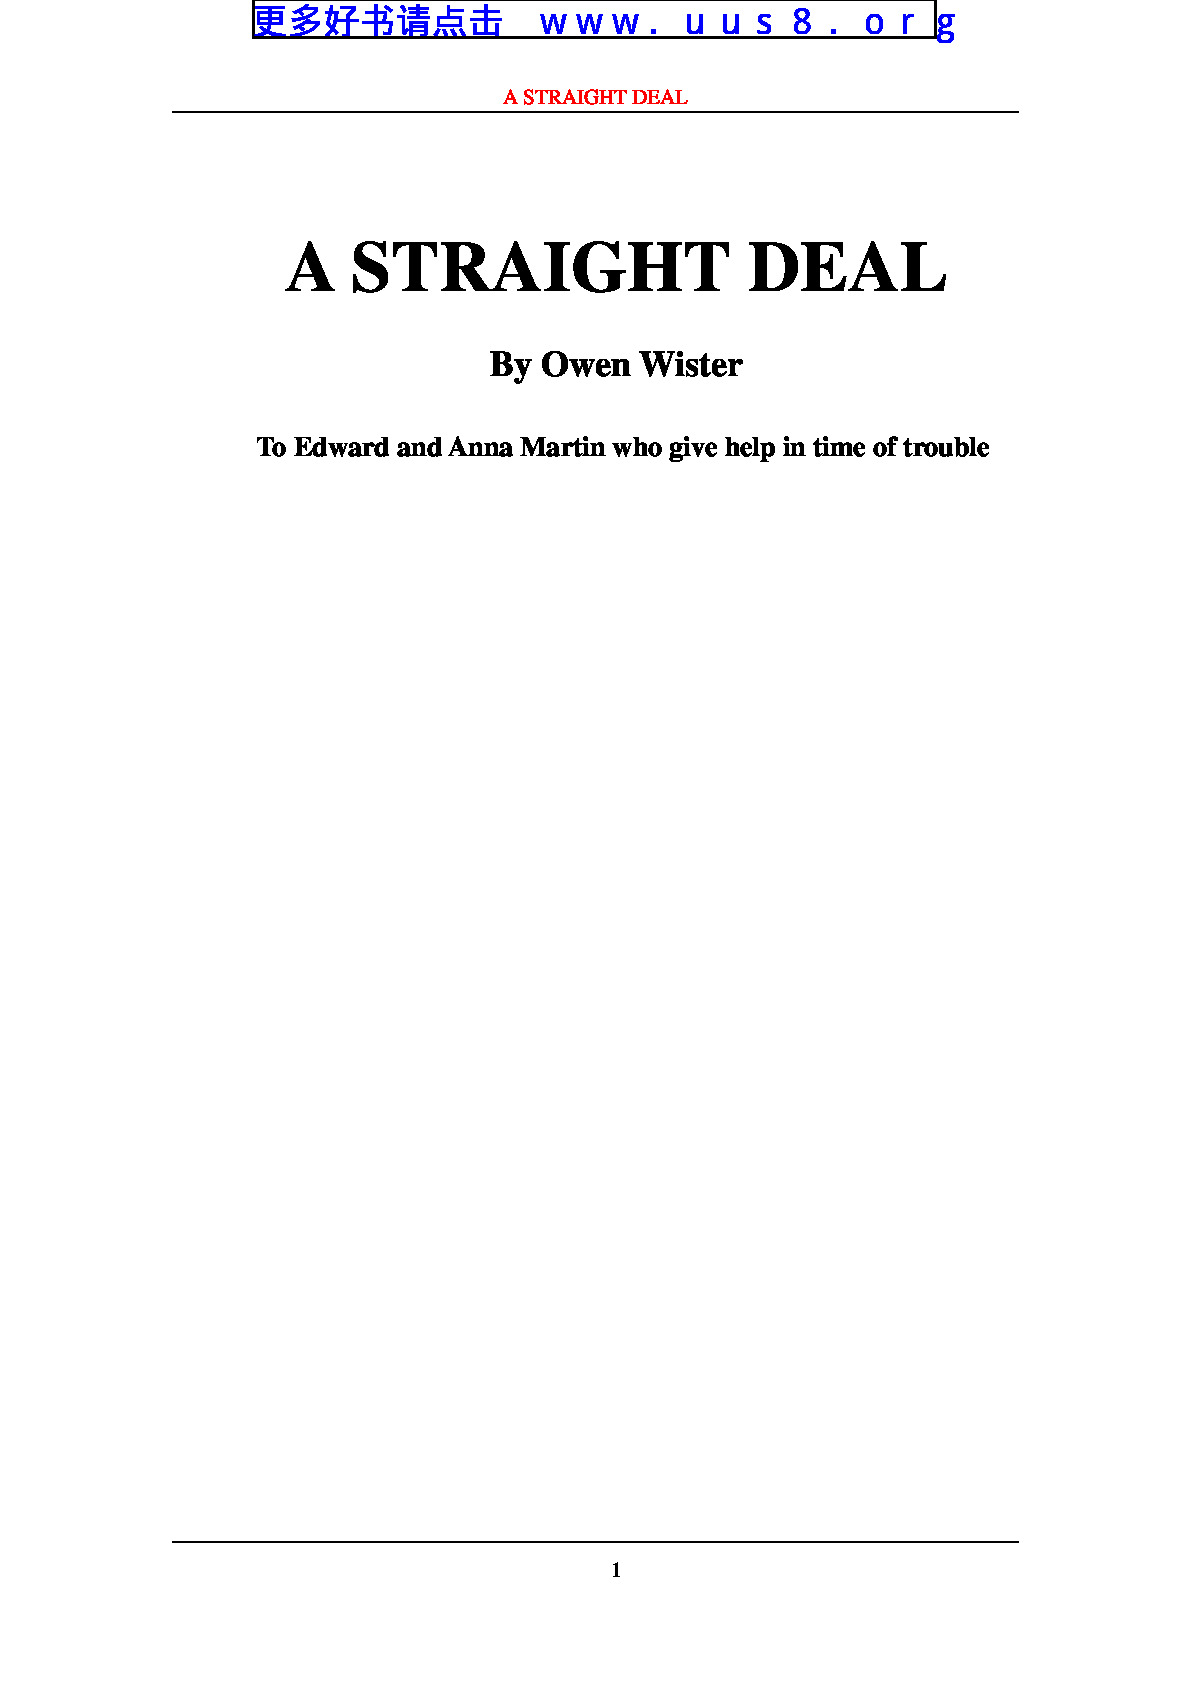 a_straight_deal(一笔干脆的交易)